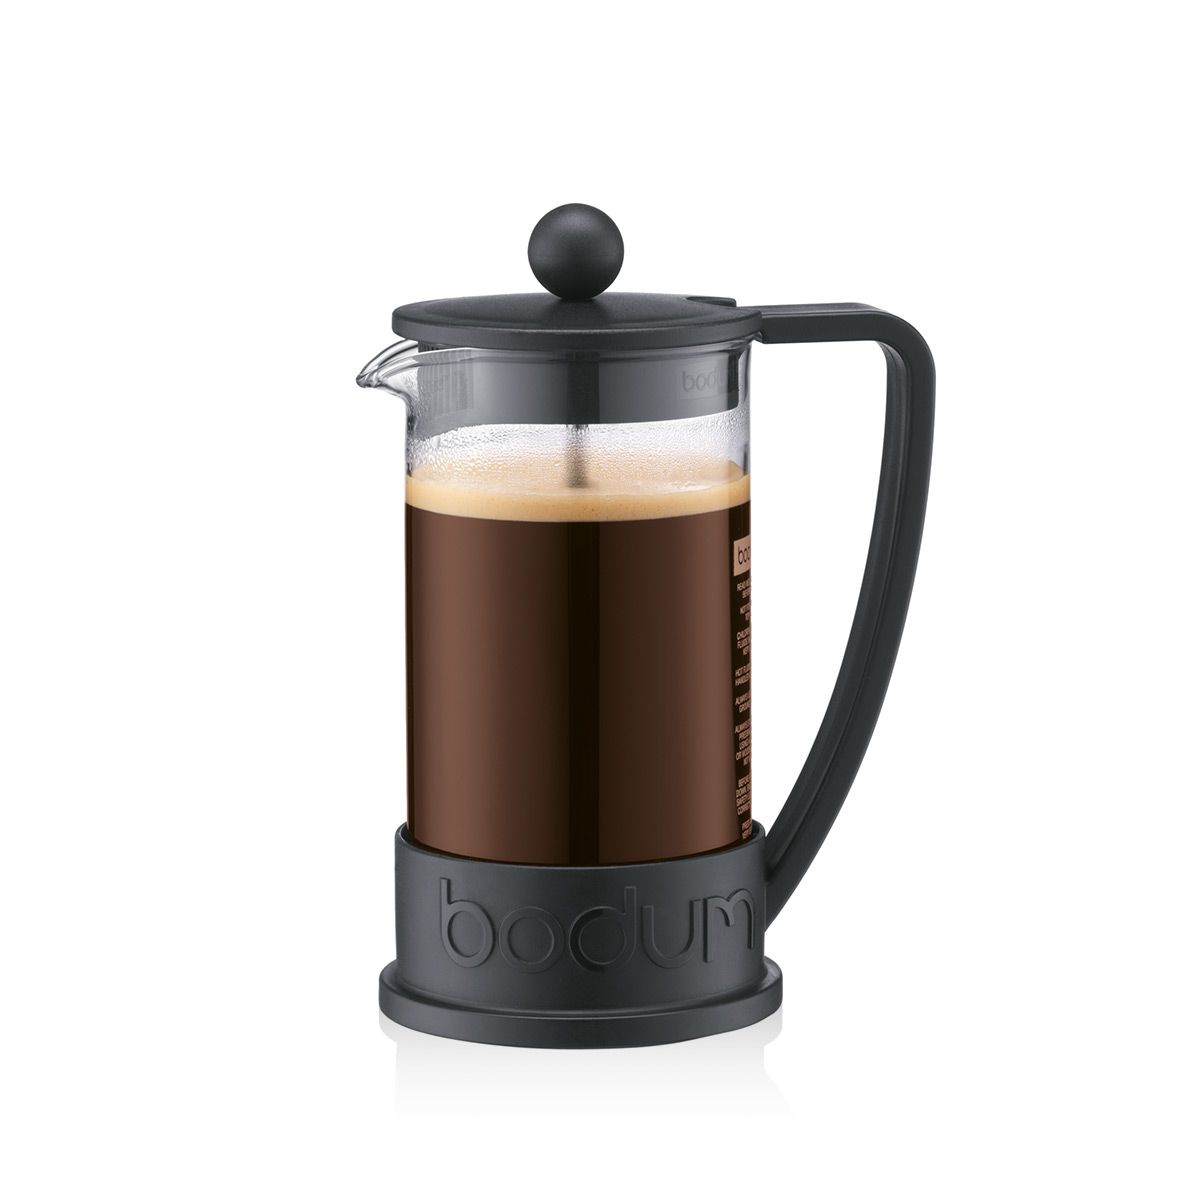 Bodum Brasilien kaffe brygger svart 0,35 l, 3 kopp